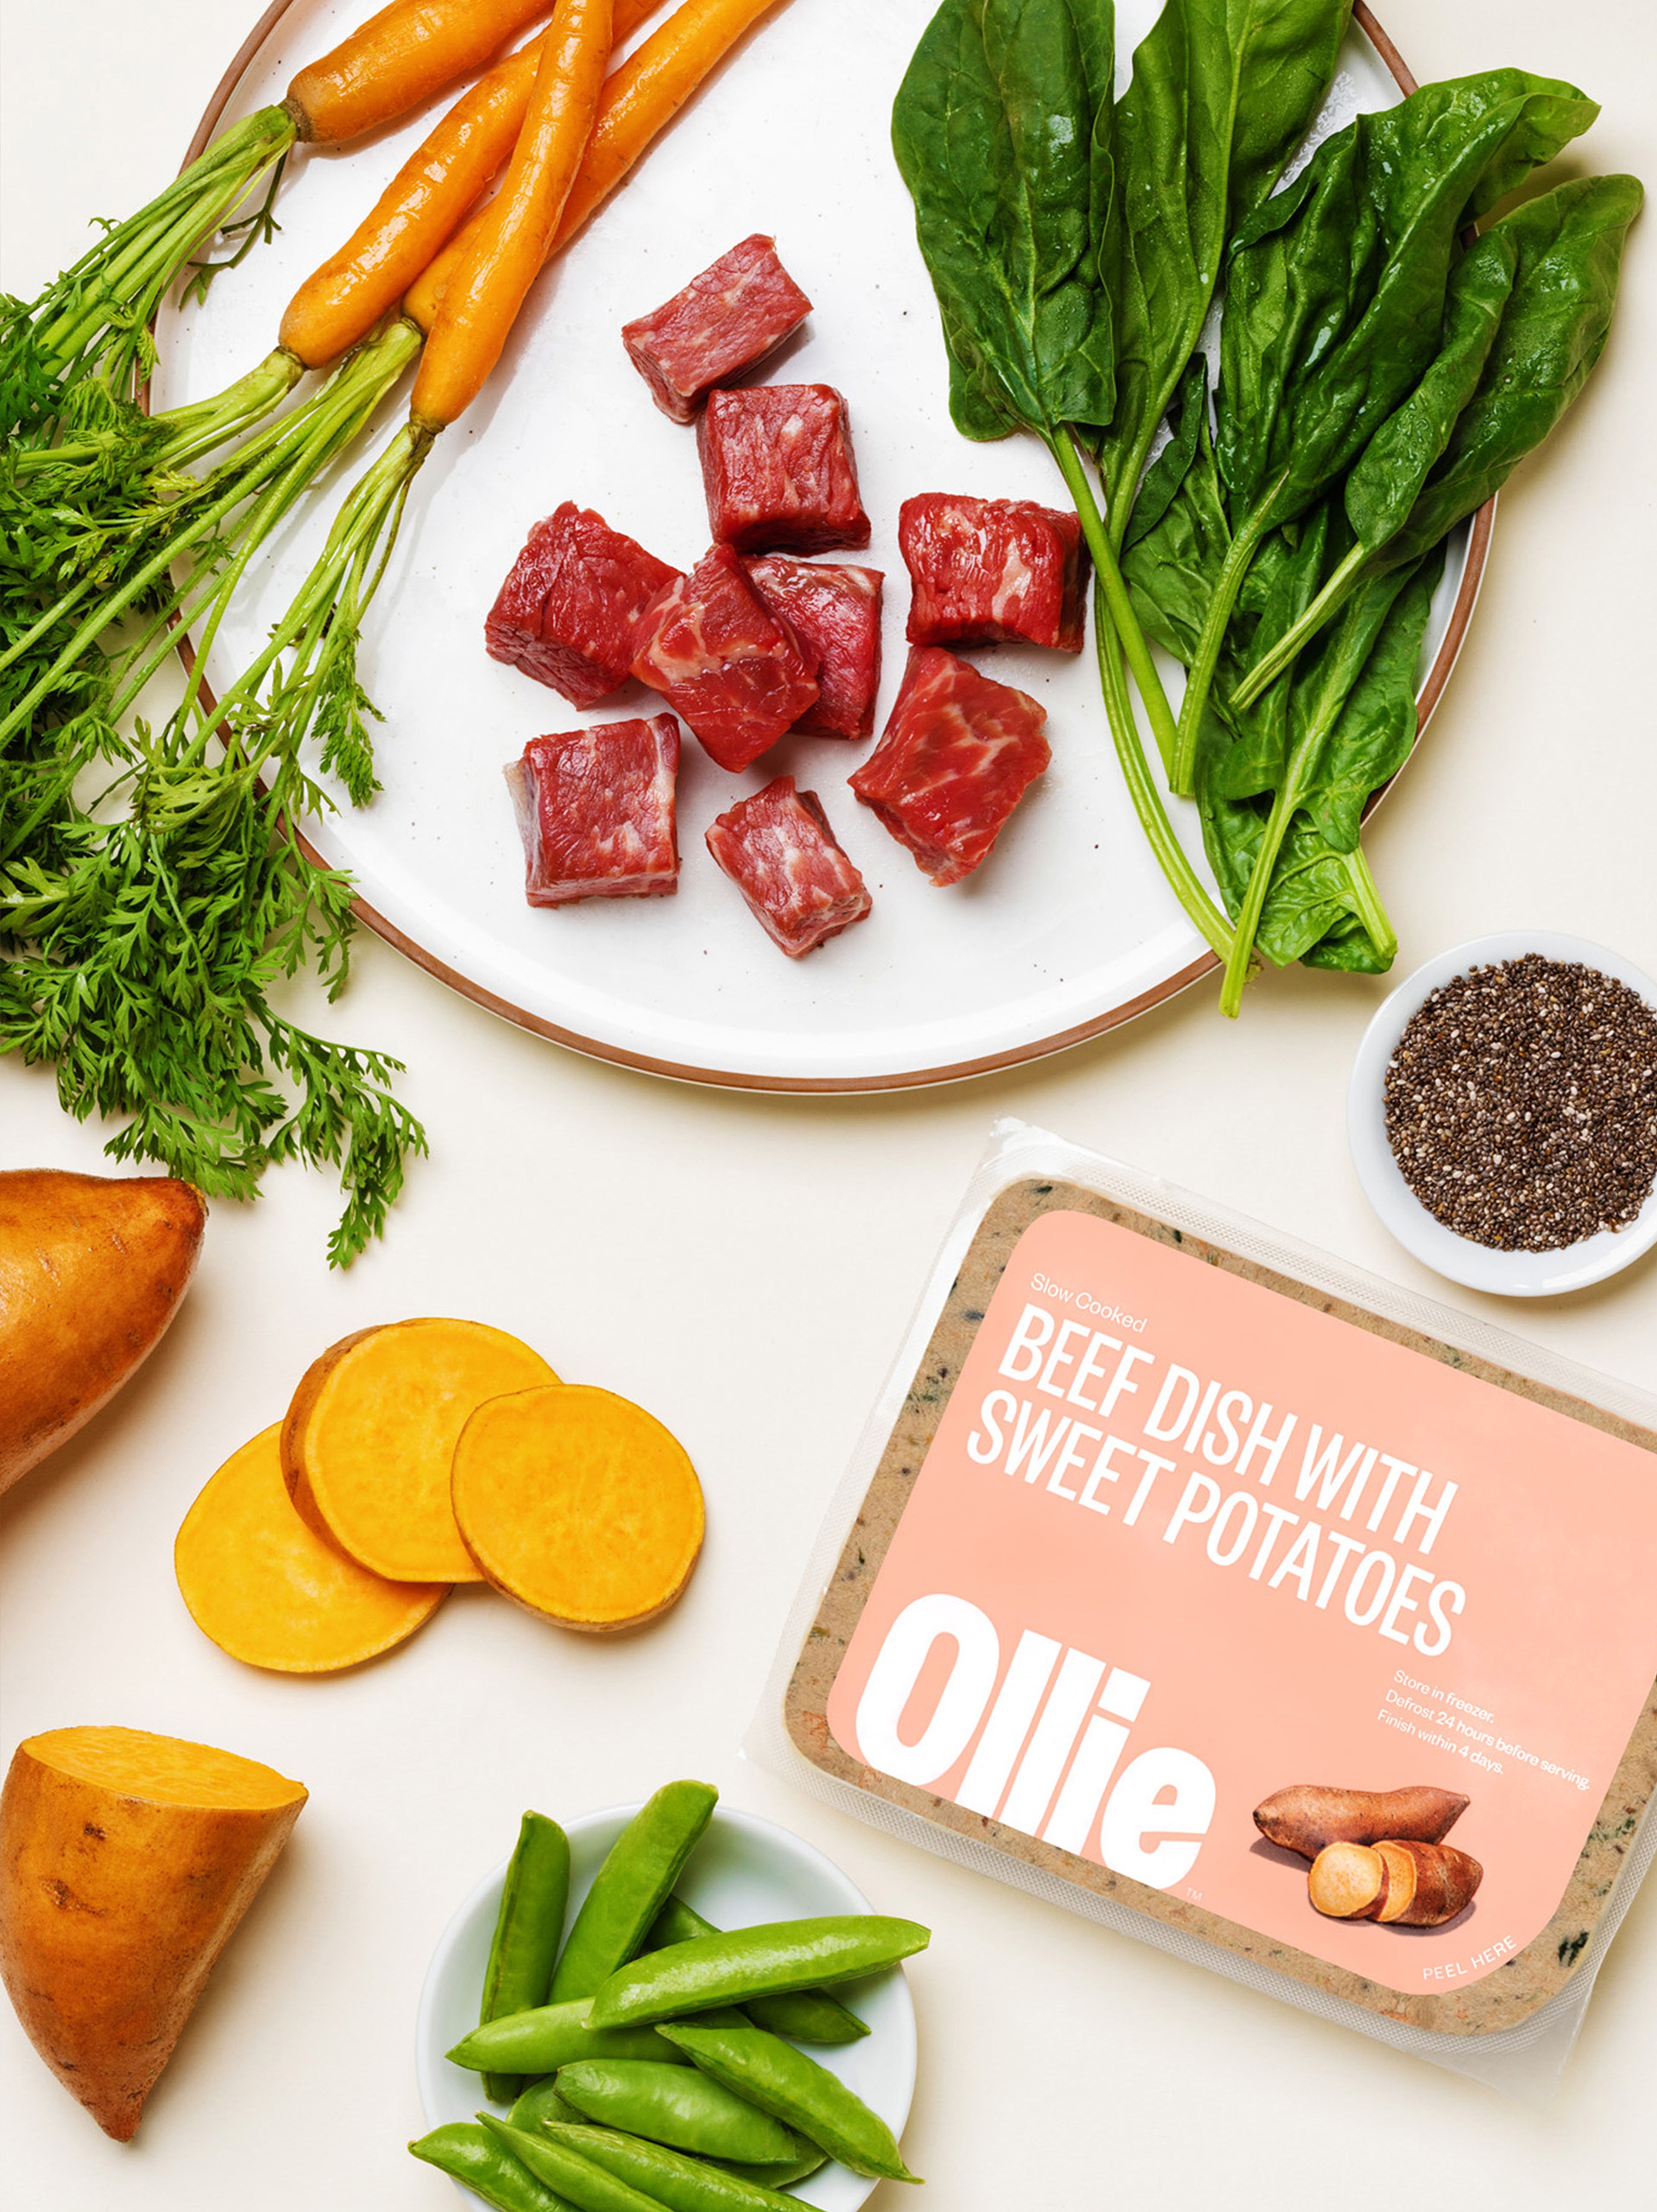 Ollie Fresh Beef is gemaakt met verse ingrediënten zoals rundvlees, zoete aardappelen en meer